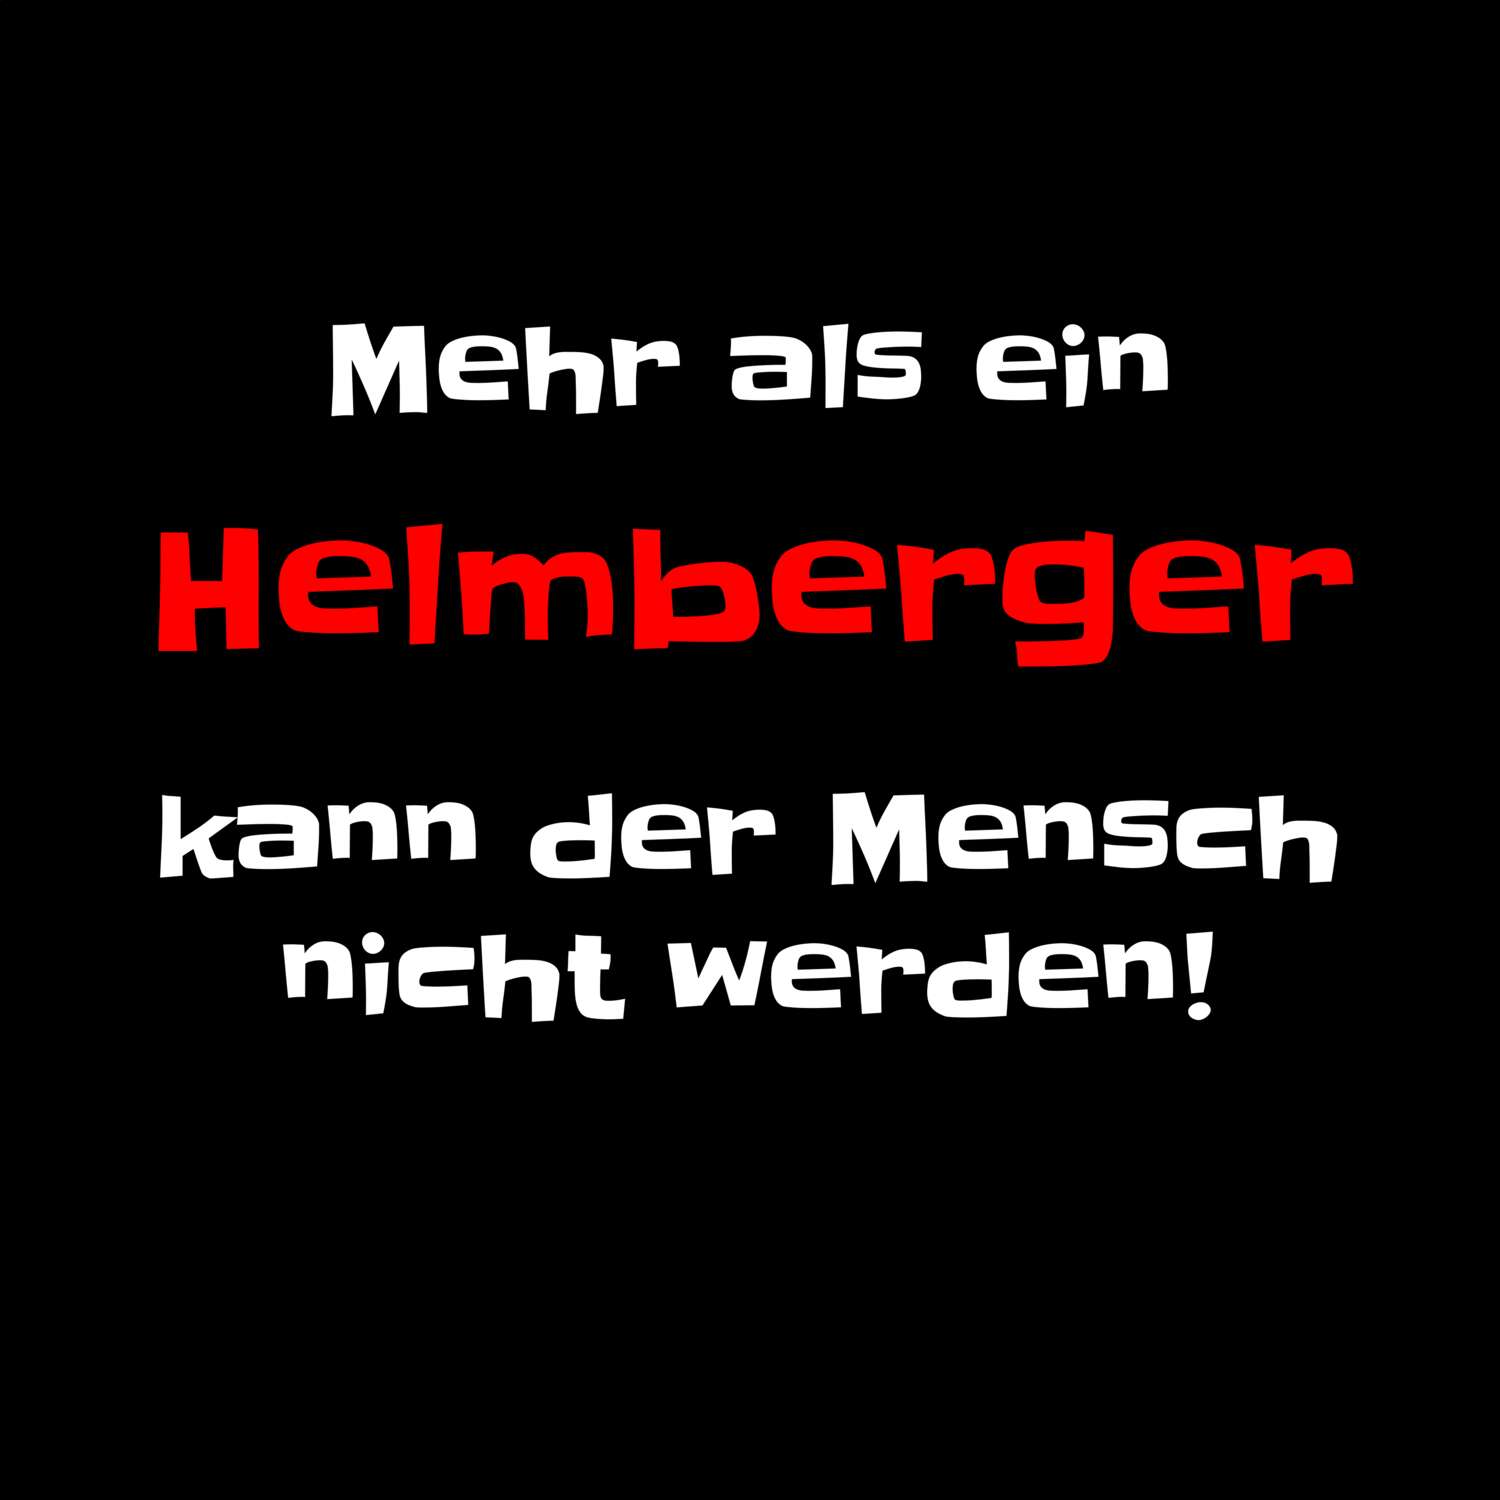 Helmberg T-Shirt »Mehr als ein«